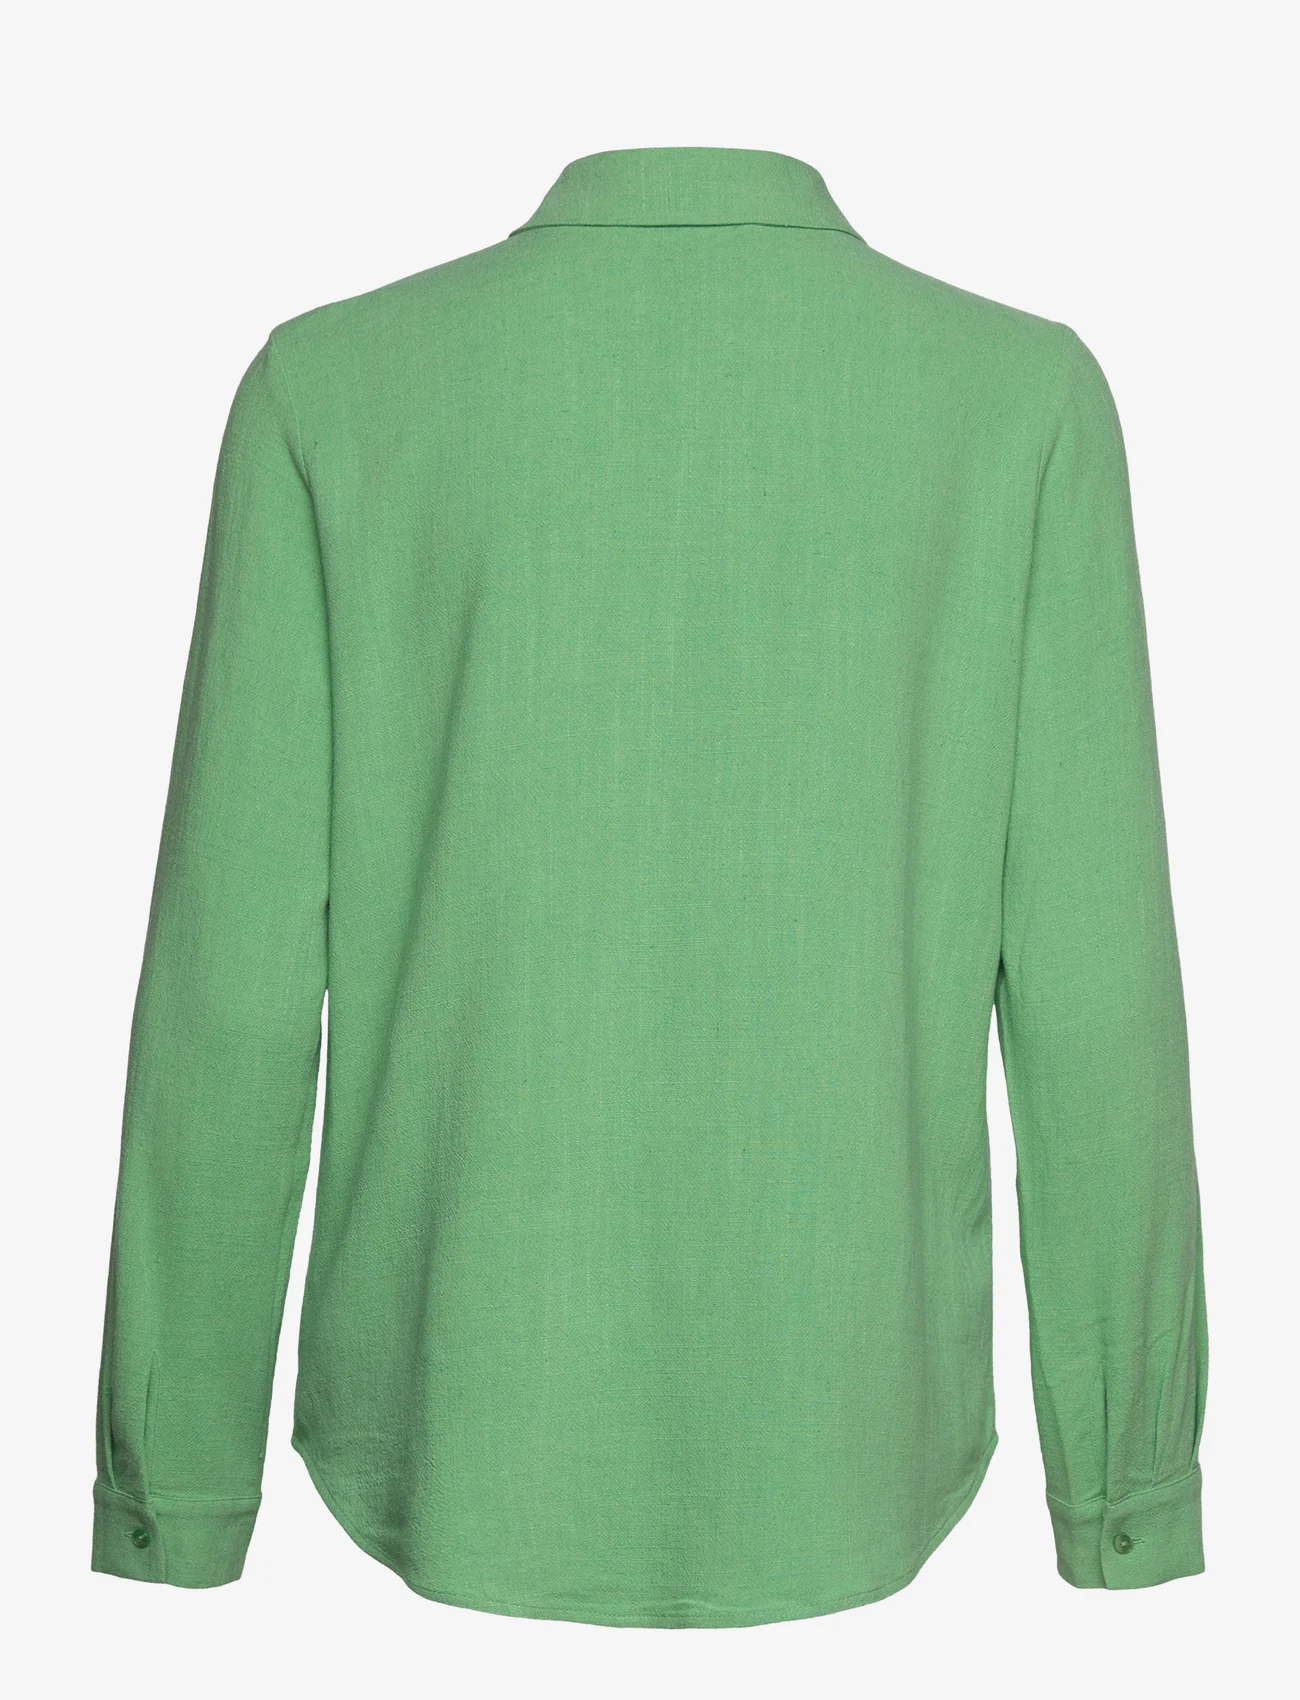 Selected Femme - SLFVIVA LS SHIRT NOOS - långärmade skjortor - absinthe green - 1